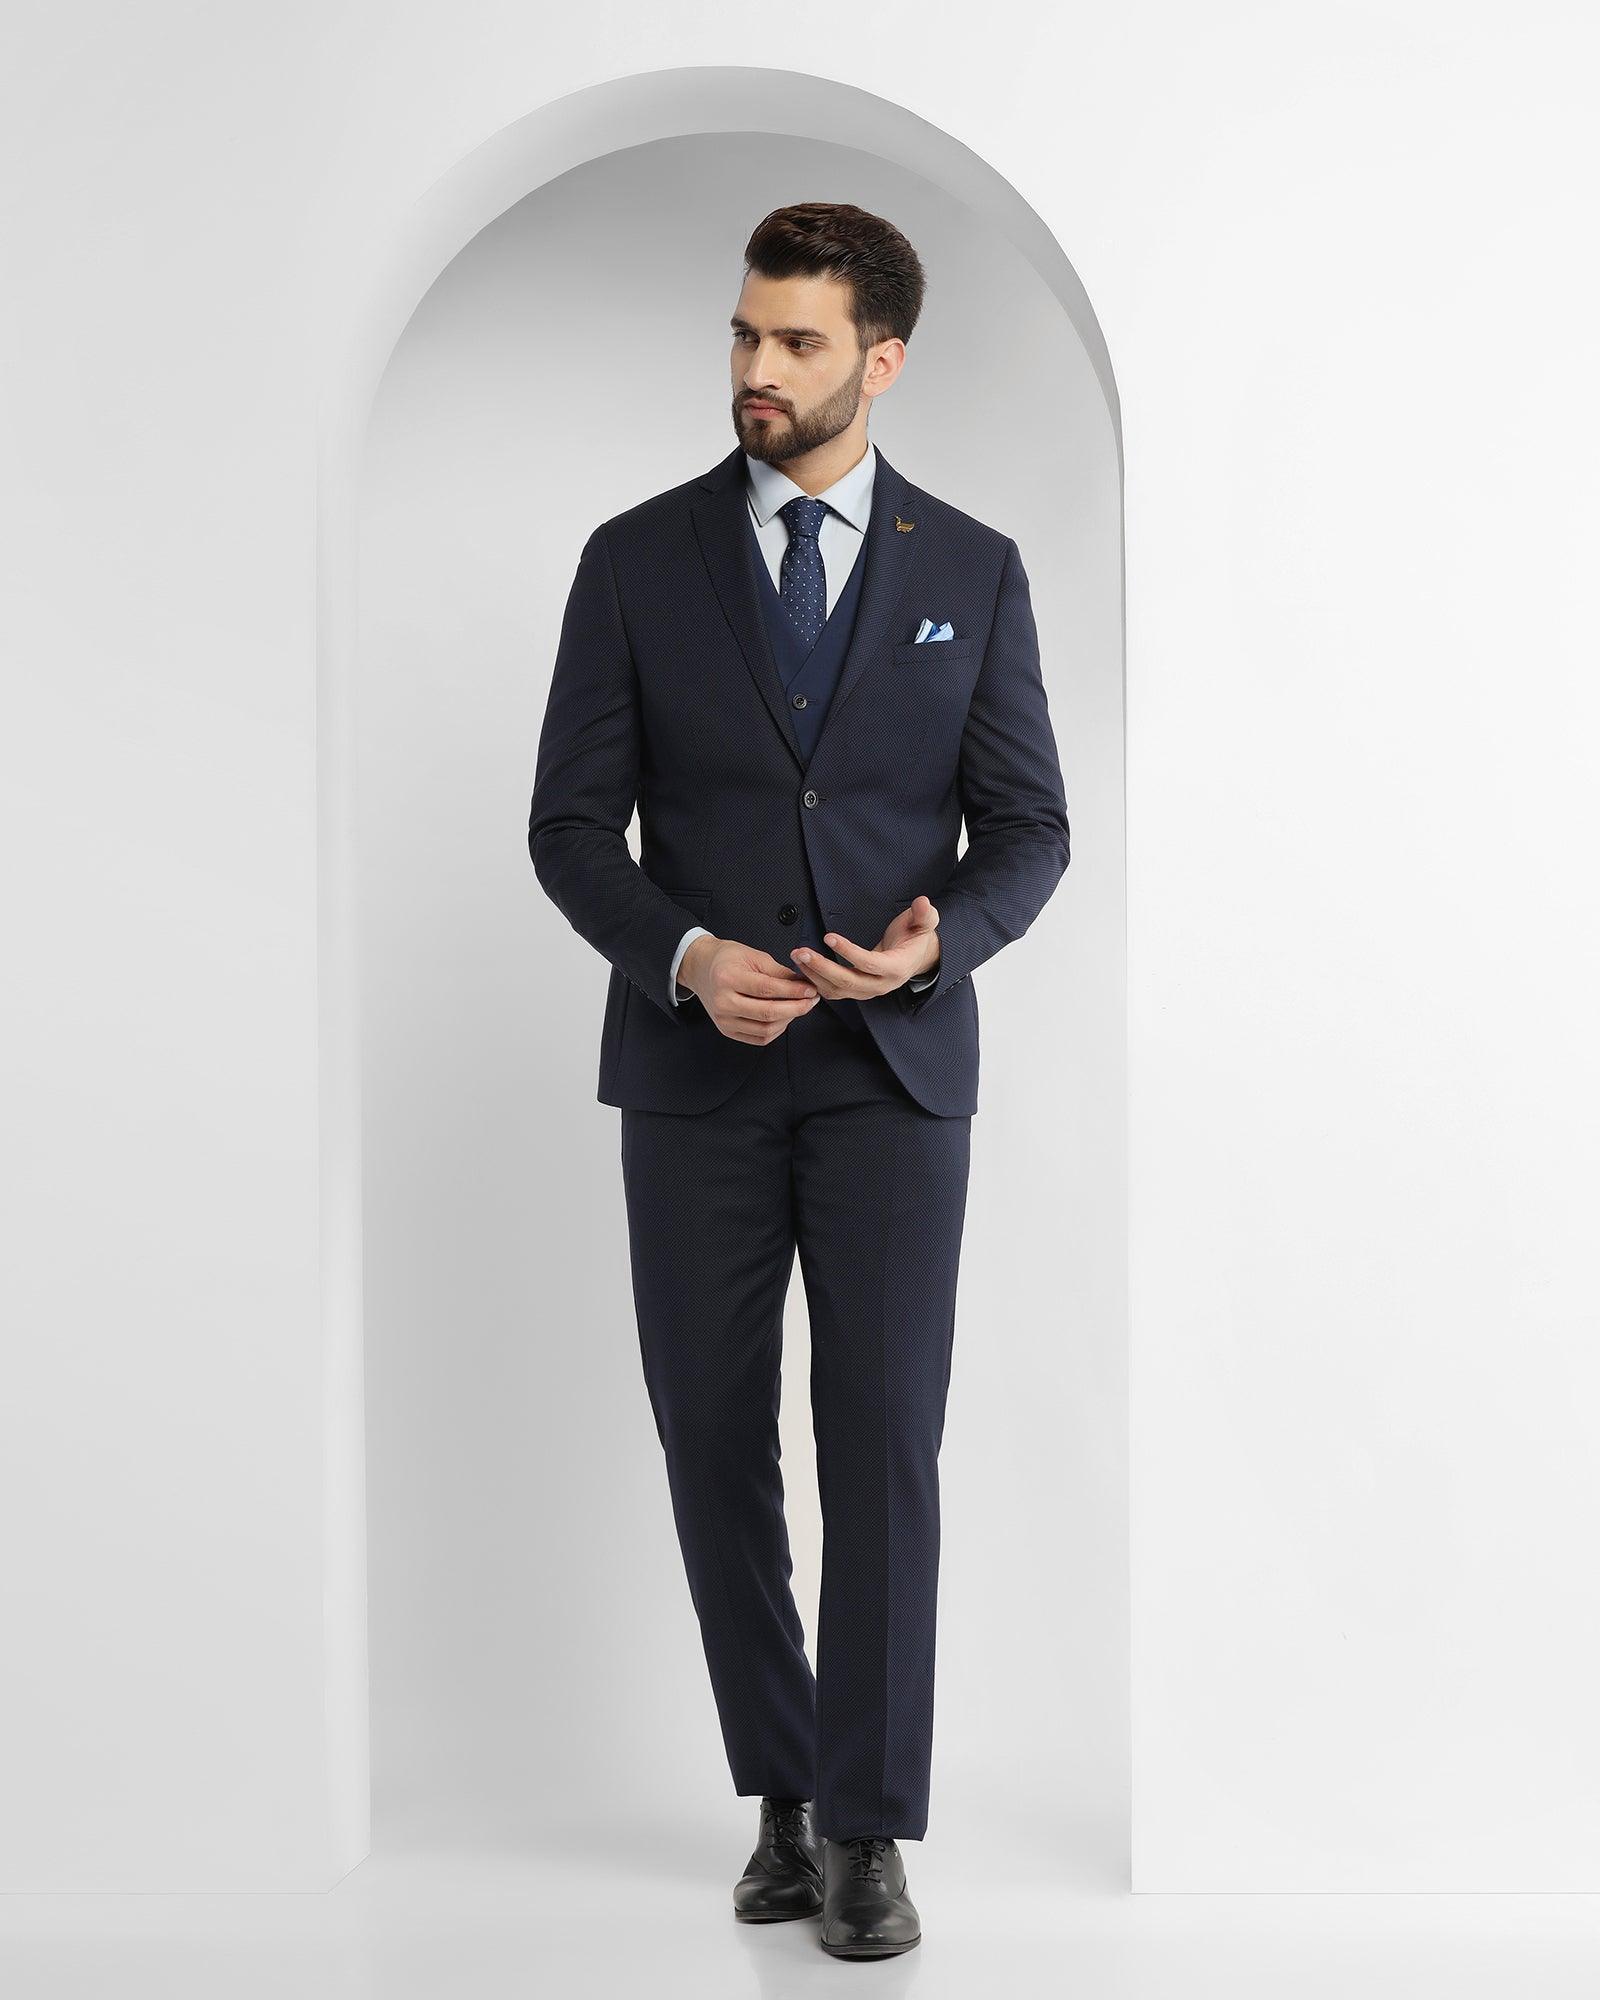 LoveeToo Men's Suit 3 Pieces Royal Royal Blue Slim Fit Tuxedo